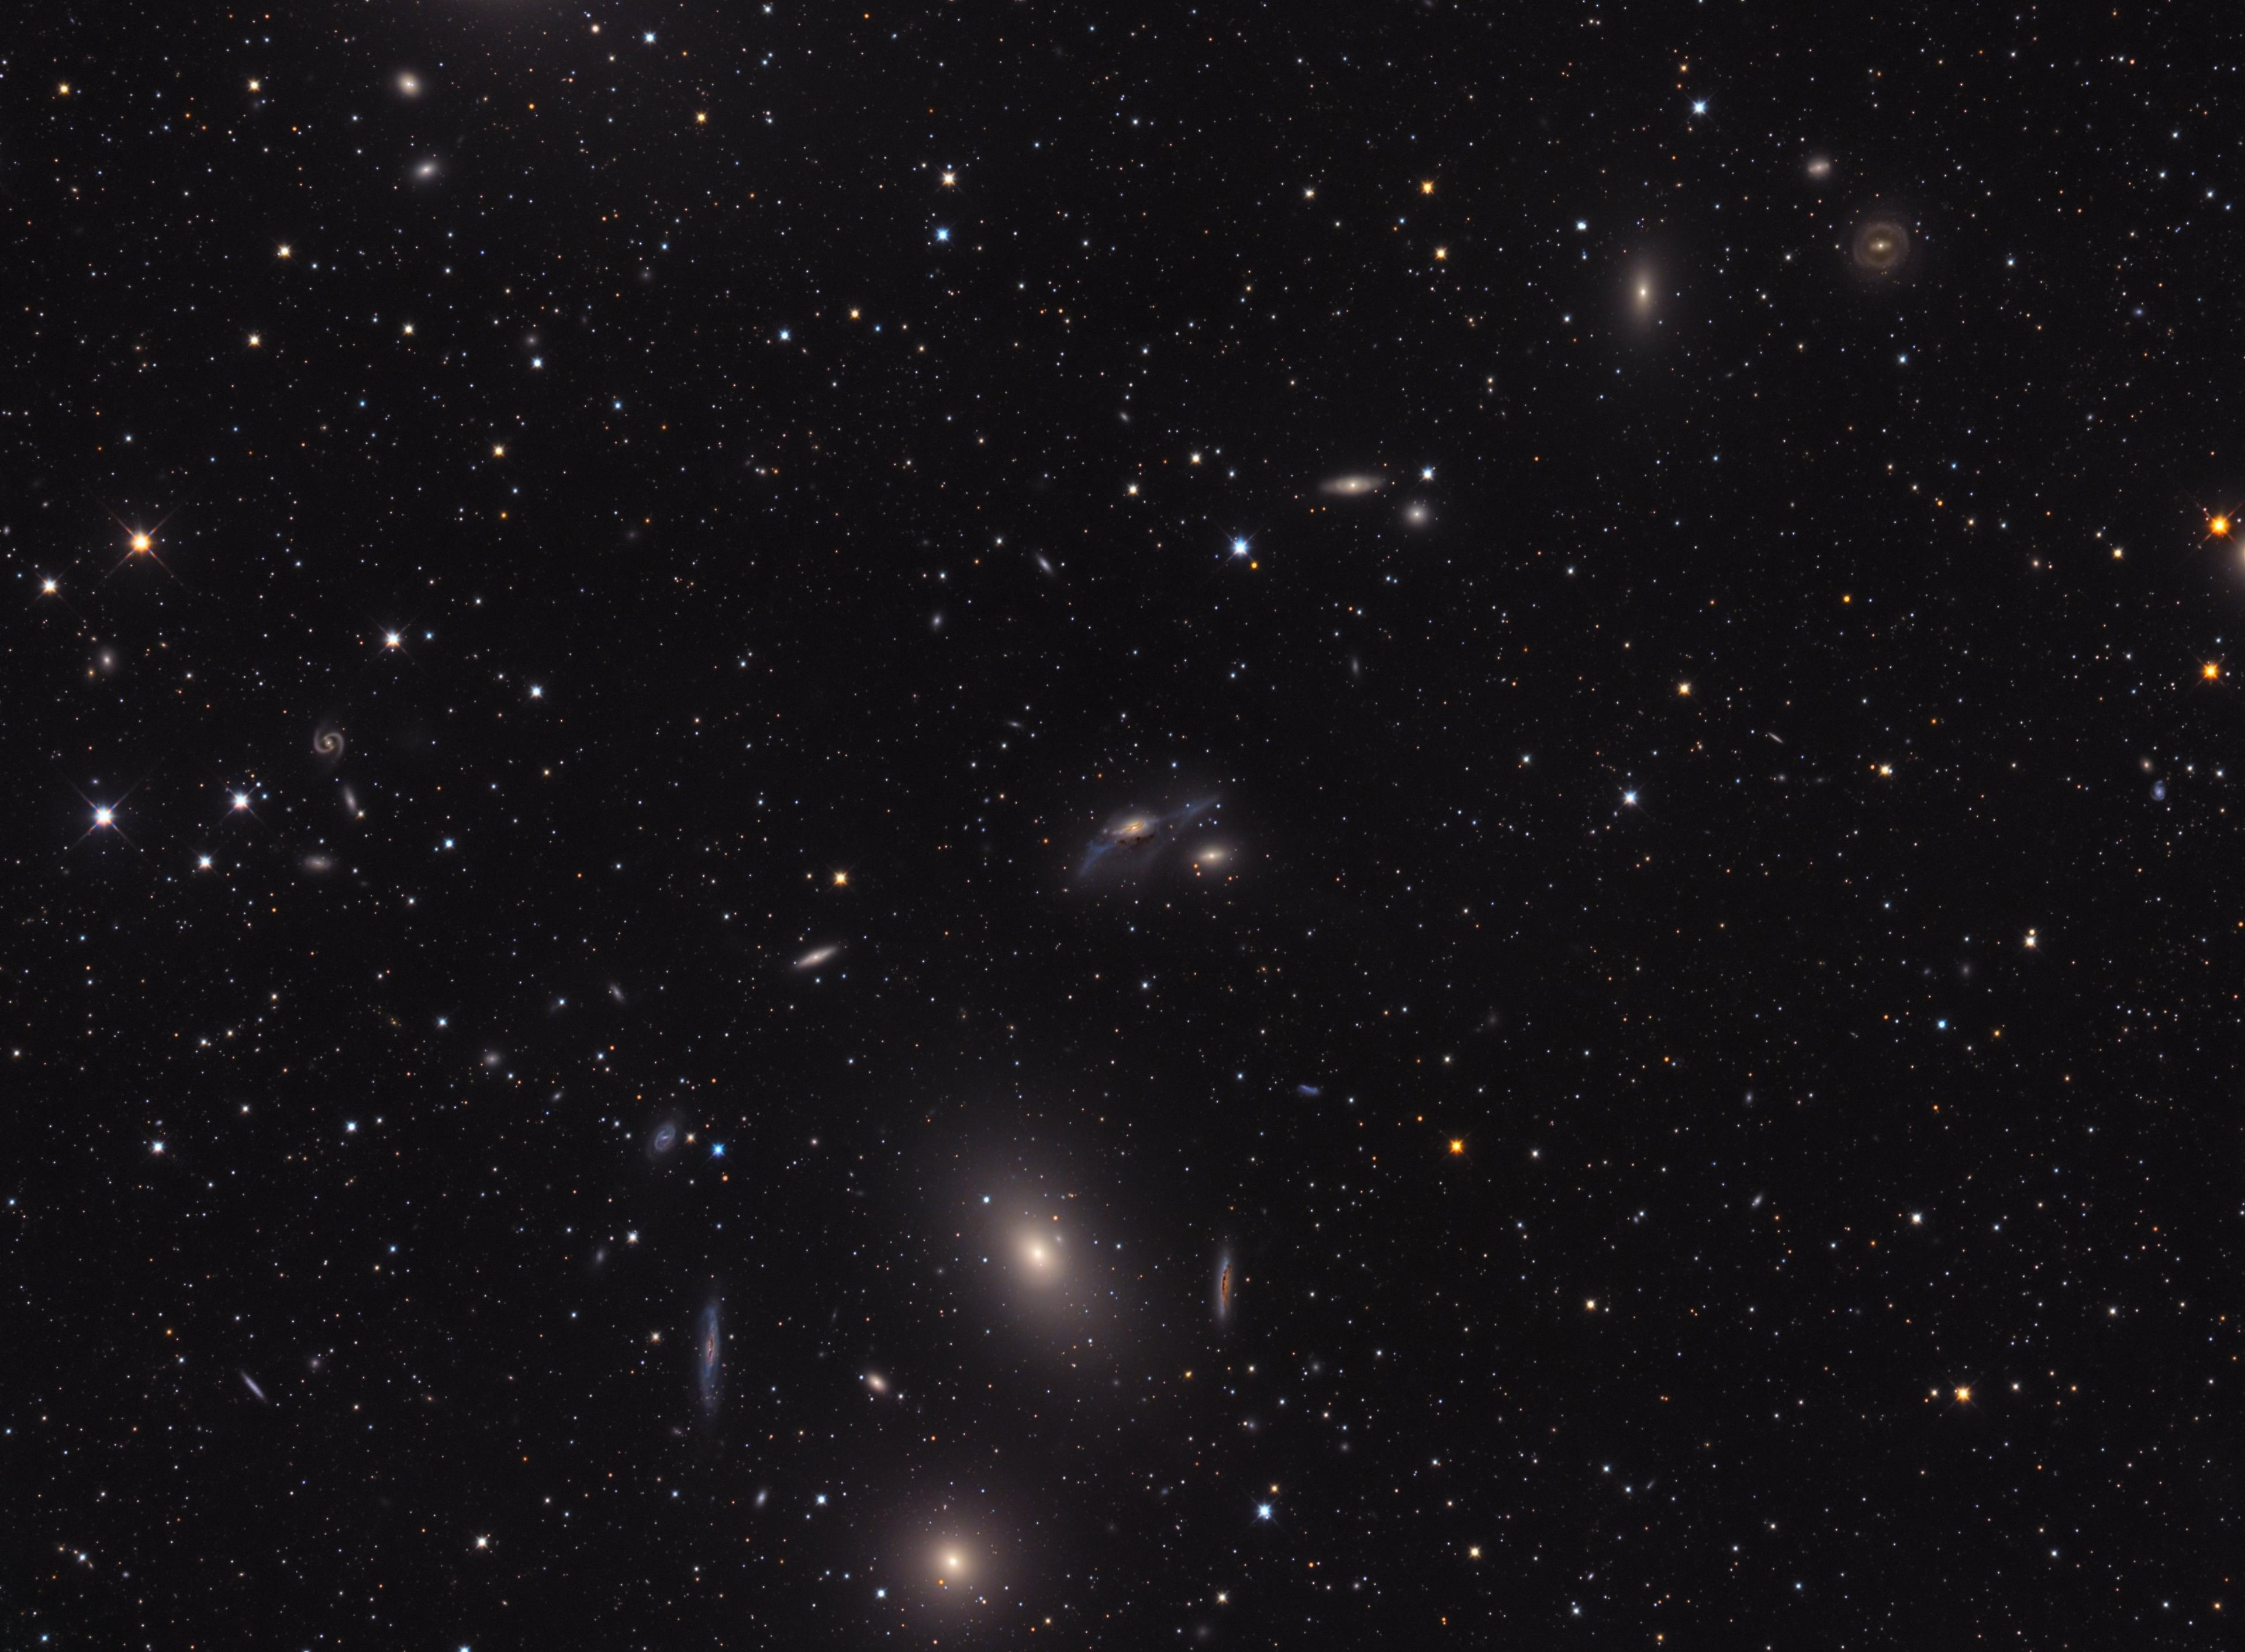 صورة تلسكوبيّة مزدانة بالنجوم للفضاء العميق يمكن فيها تمييز سلسلة من المجرّات التي تمتد من أسفل المركز حيث تظهر مجرّتان ساطعتان باتّجاه الأعلى واليمين. يمكن تمييز عدّة أنواع من المجرّات فبعضها حلزونيّة وبعضها إهليلجيّة كما تظهر واحدة غير منتظمة في وسط الصورة.